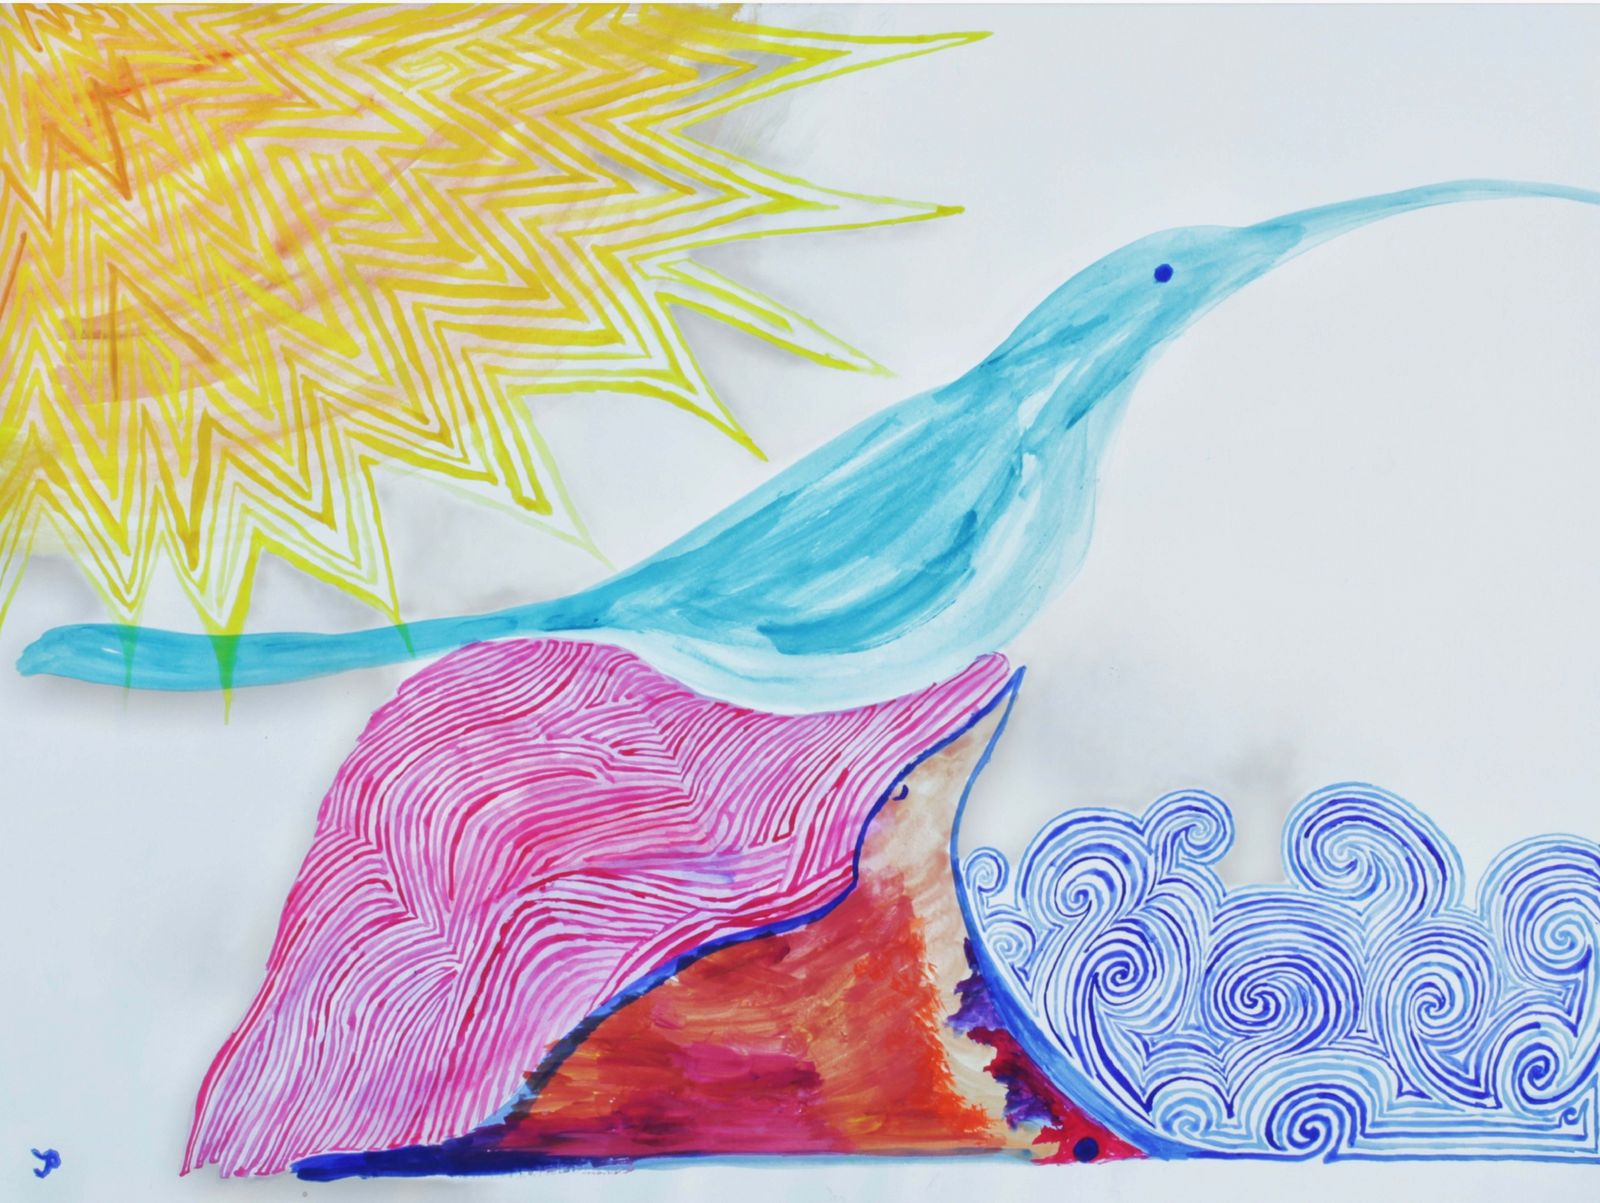 Ise Pal, Wintersonne, 2018, 50 X 68 cm, Wasserfarben auf Papier